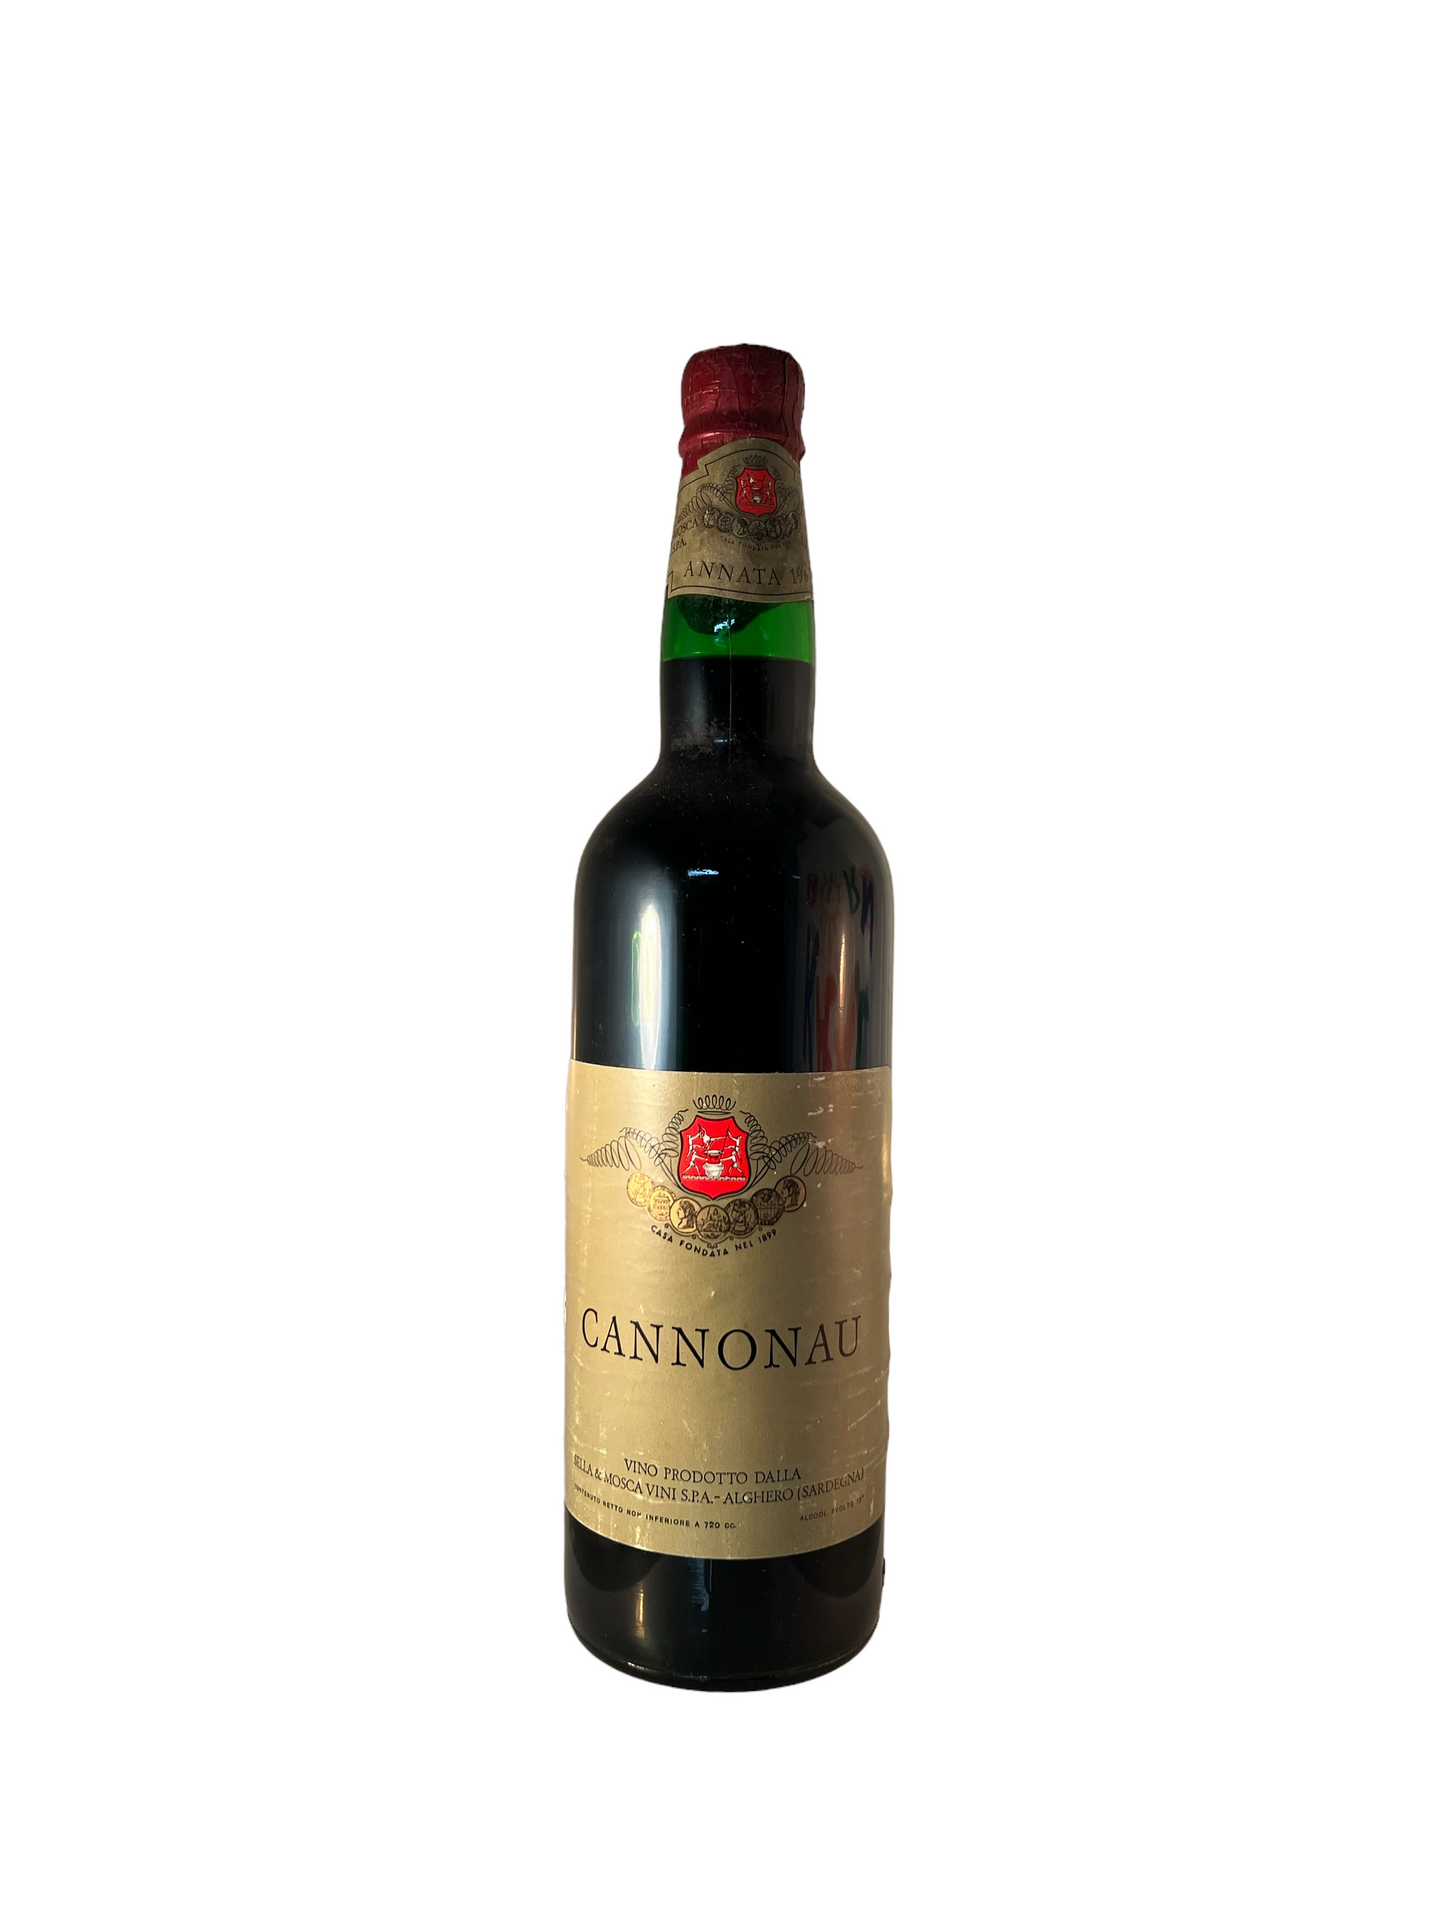 Cannonau 1967 Sella & Mosca Vini